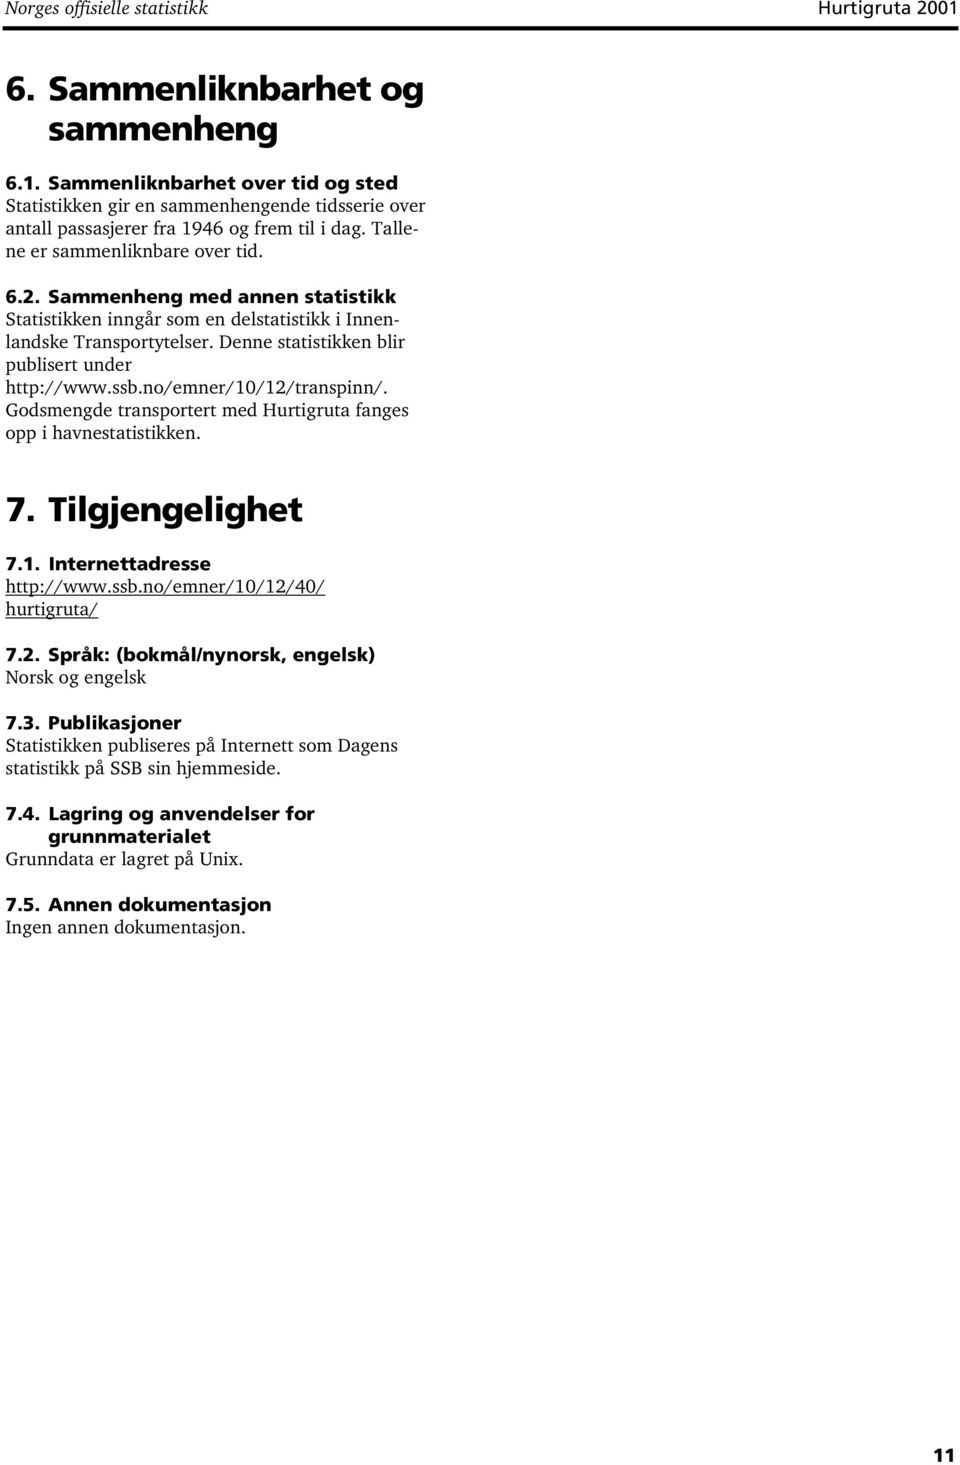 ssb.no/emner/10/12/transpinn/. Godsmengde transportert med Hurtigruta fanges opp i havnestatistikken. 7. Tilgjengelighet 7.1. Internettadresse http://www.ssb.no/emner/10/12/40/ hurtigruta/ 7.2. Språk: (bokmål/nynorsk, engelsk) Norsk og engelsk 7.